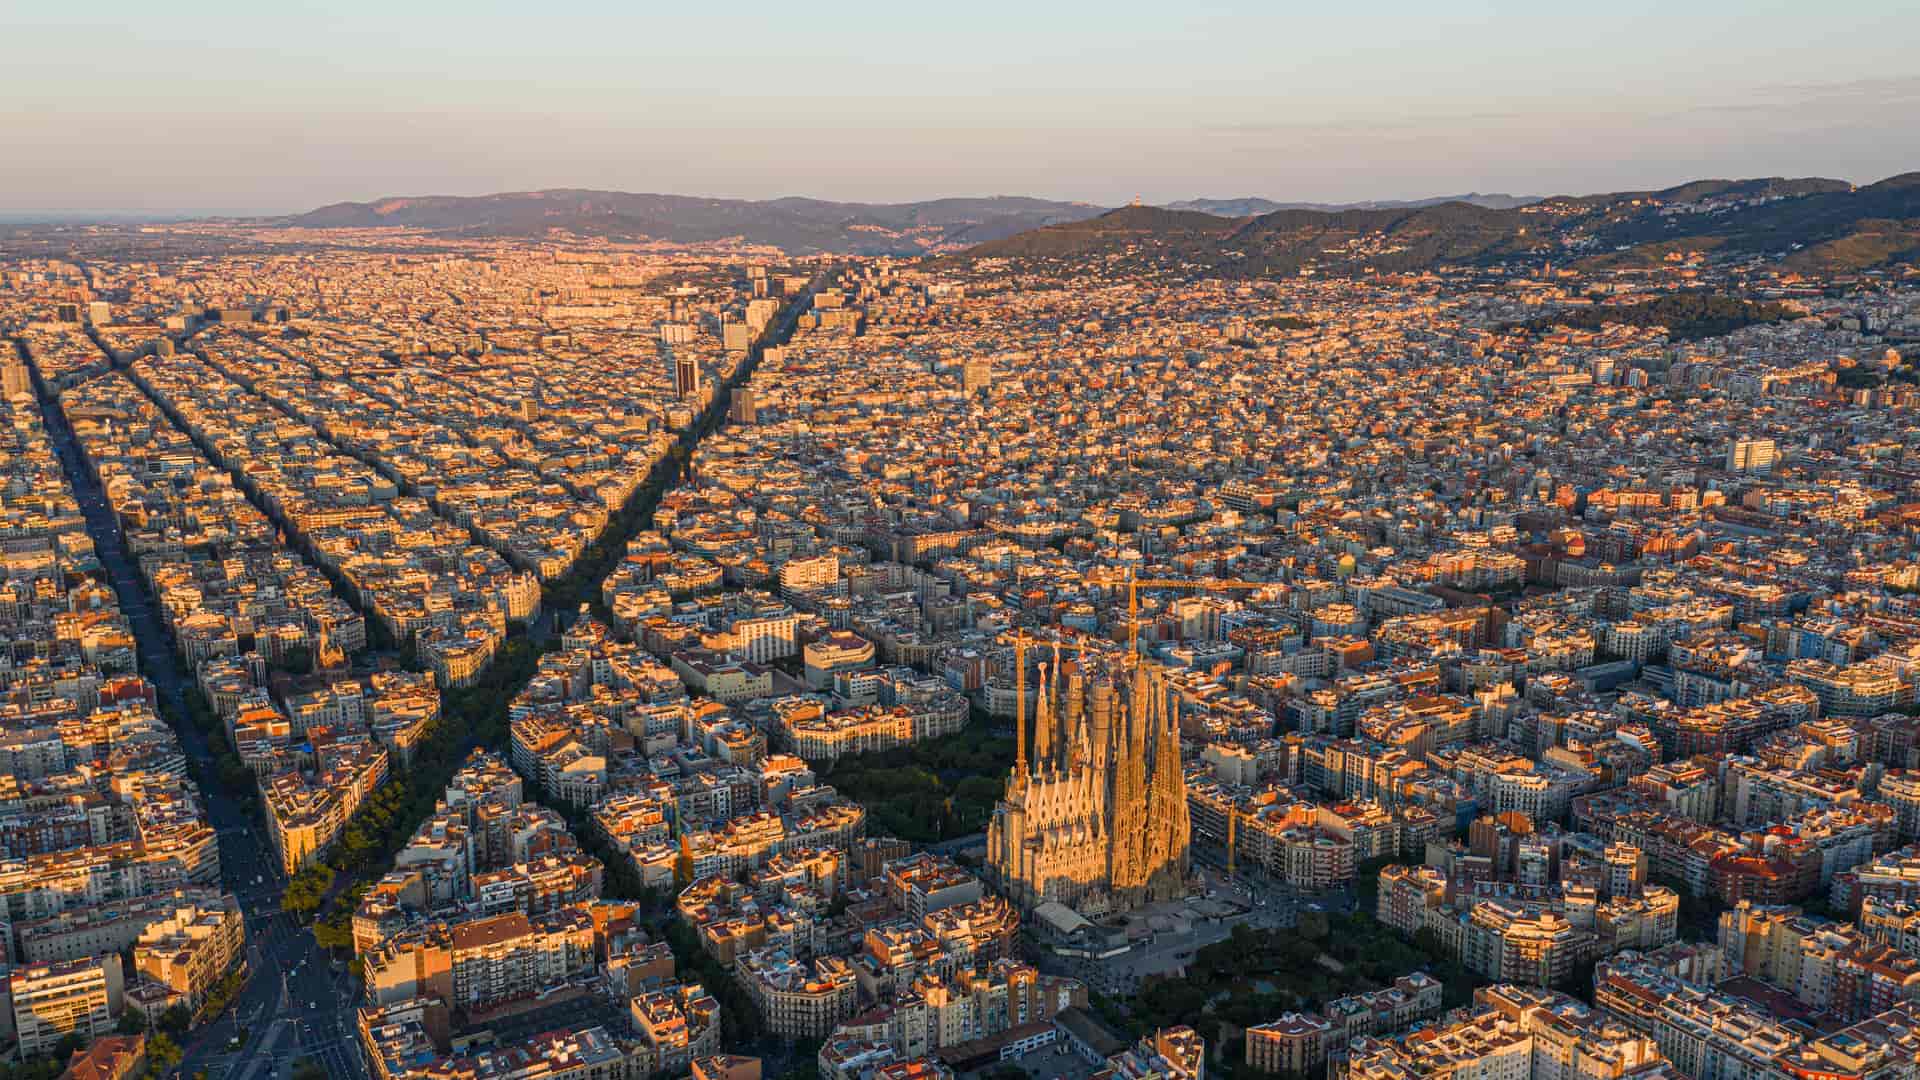 Vista aérea de Barcelona donde esta disponible el operador telefónico finetwork